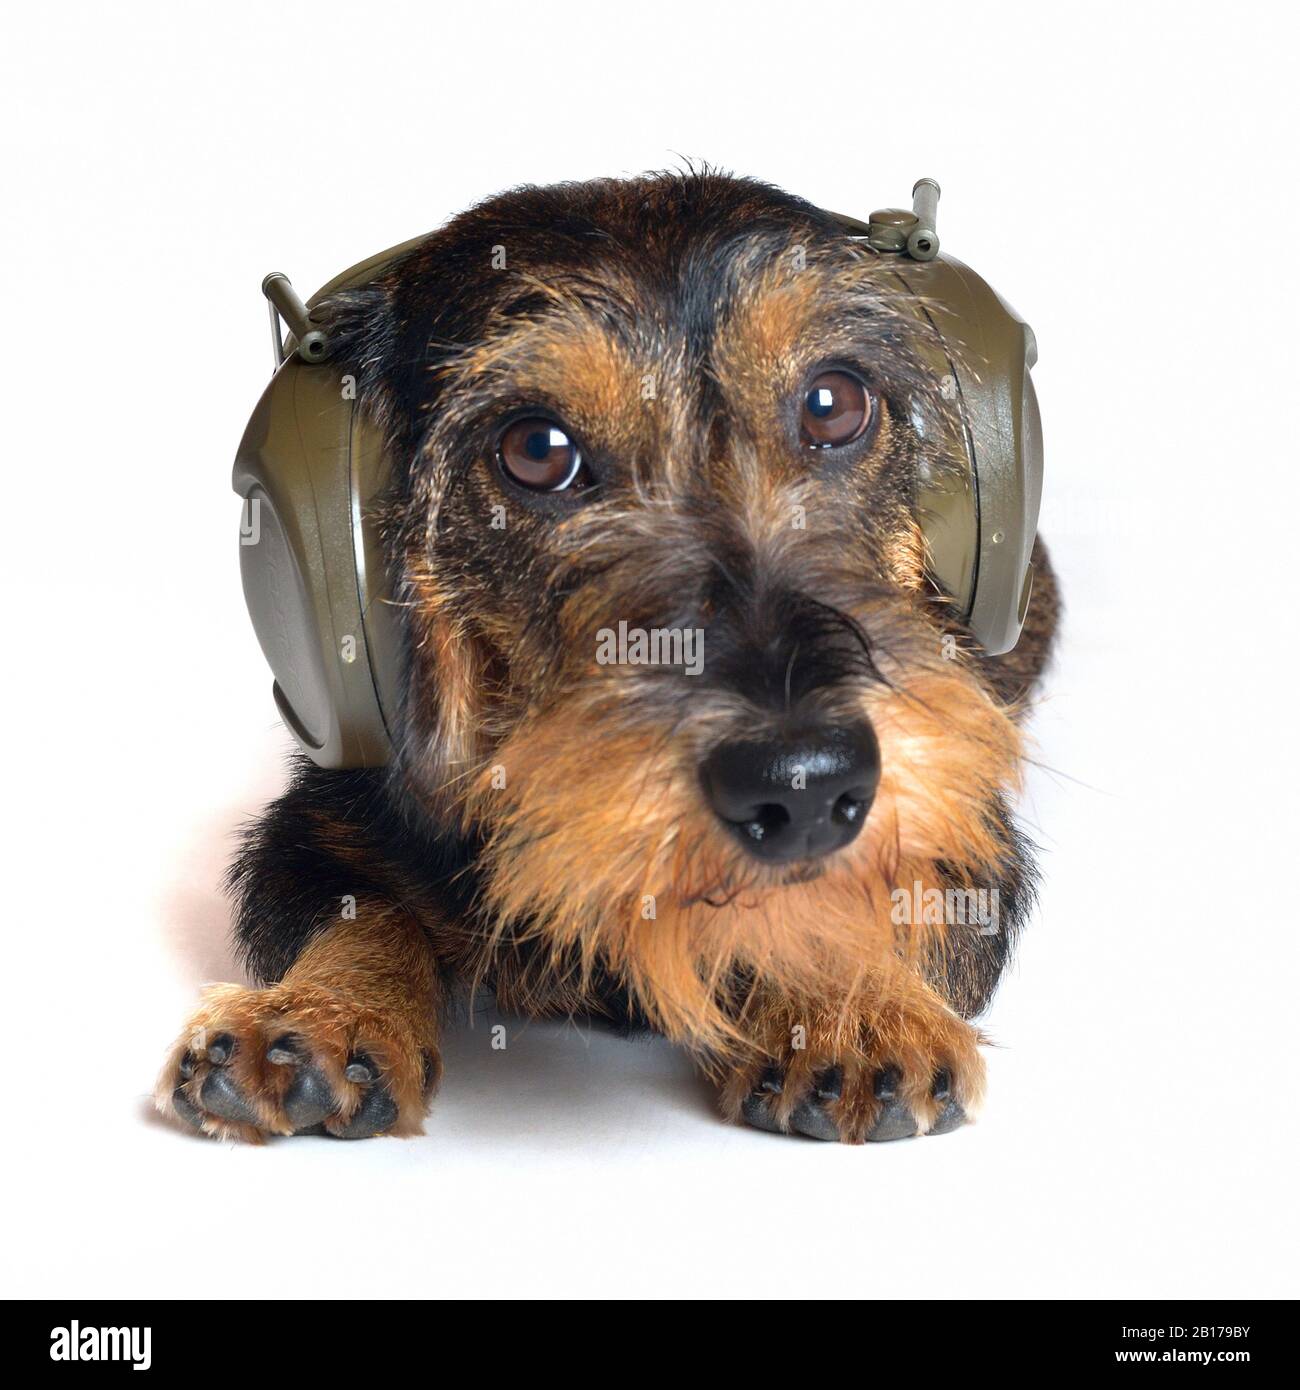 Dachshund à poil métallique, chien de saucisse À poil Métallique, chien domestique (Canis lupus F. familiaris), chien mâle avec casque, protection des oreilles Banque D'Images